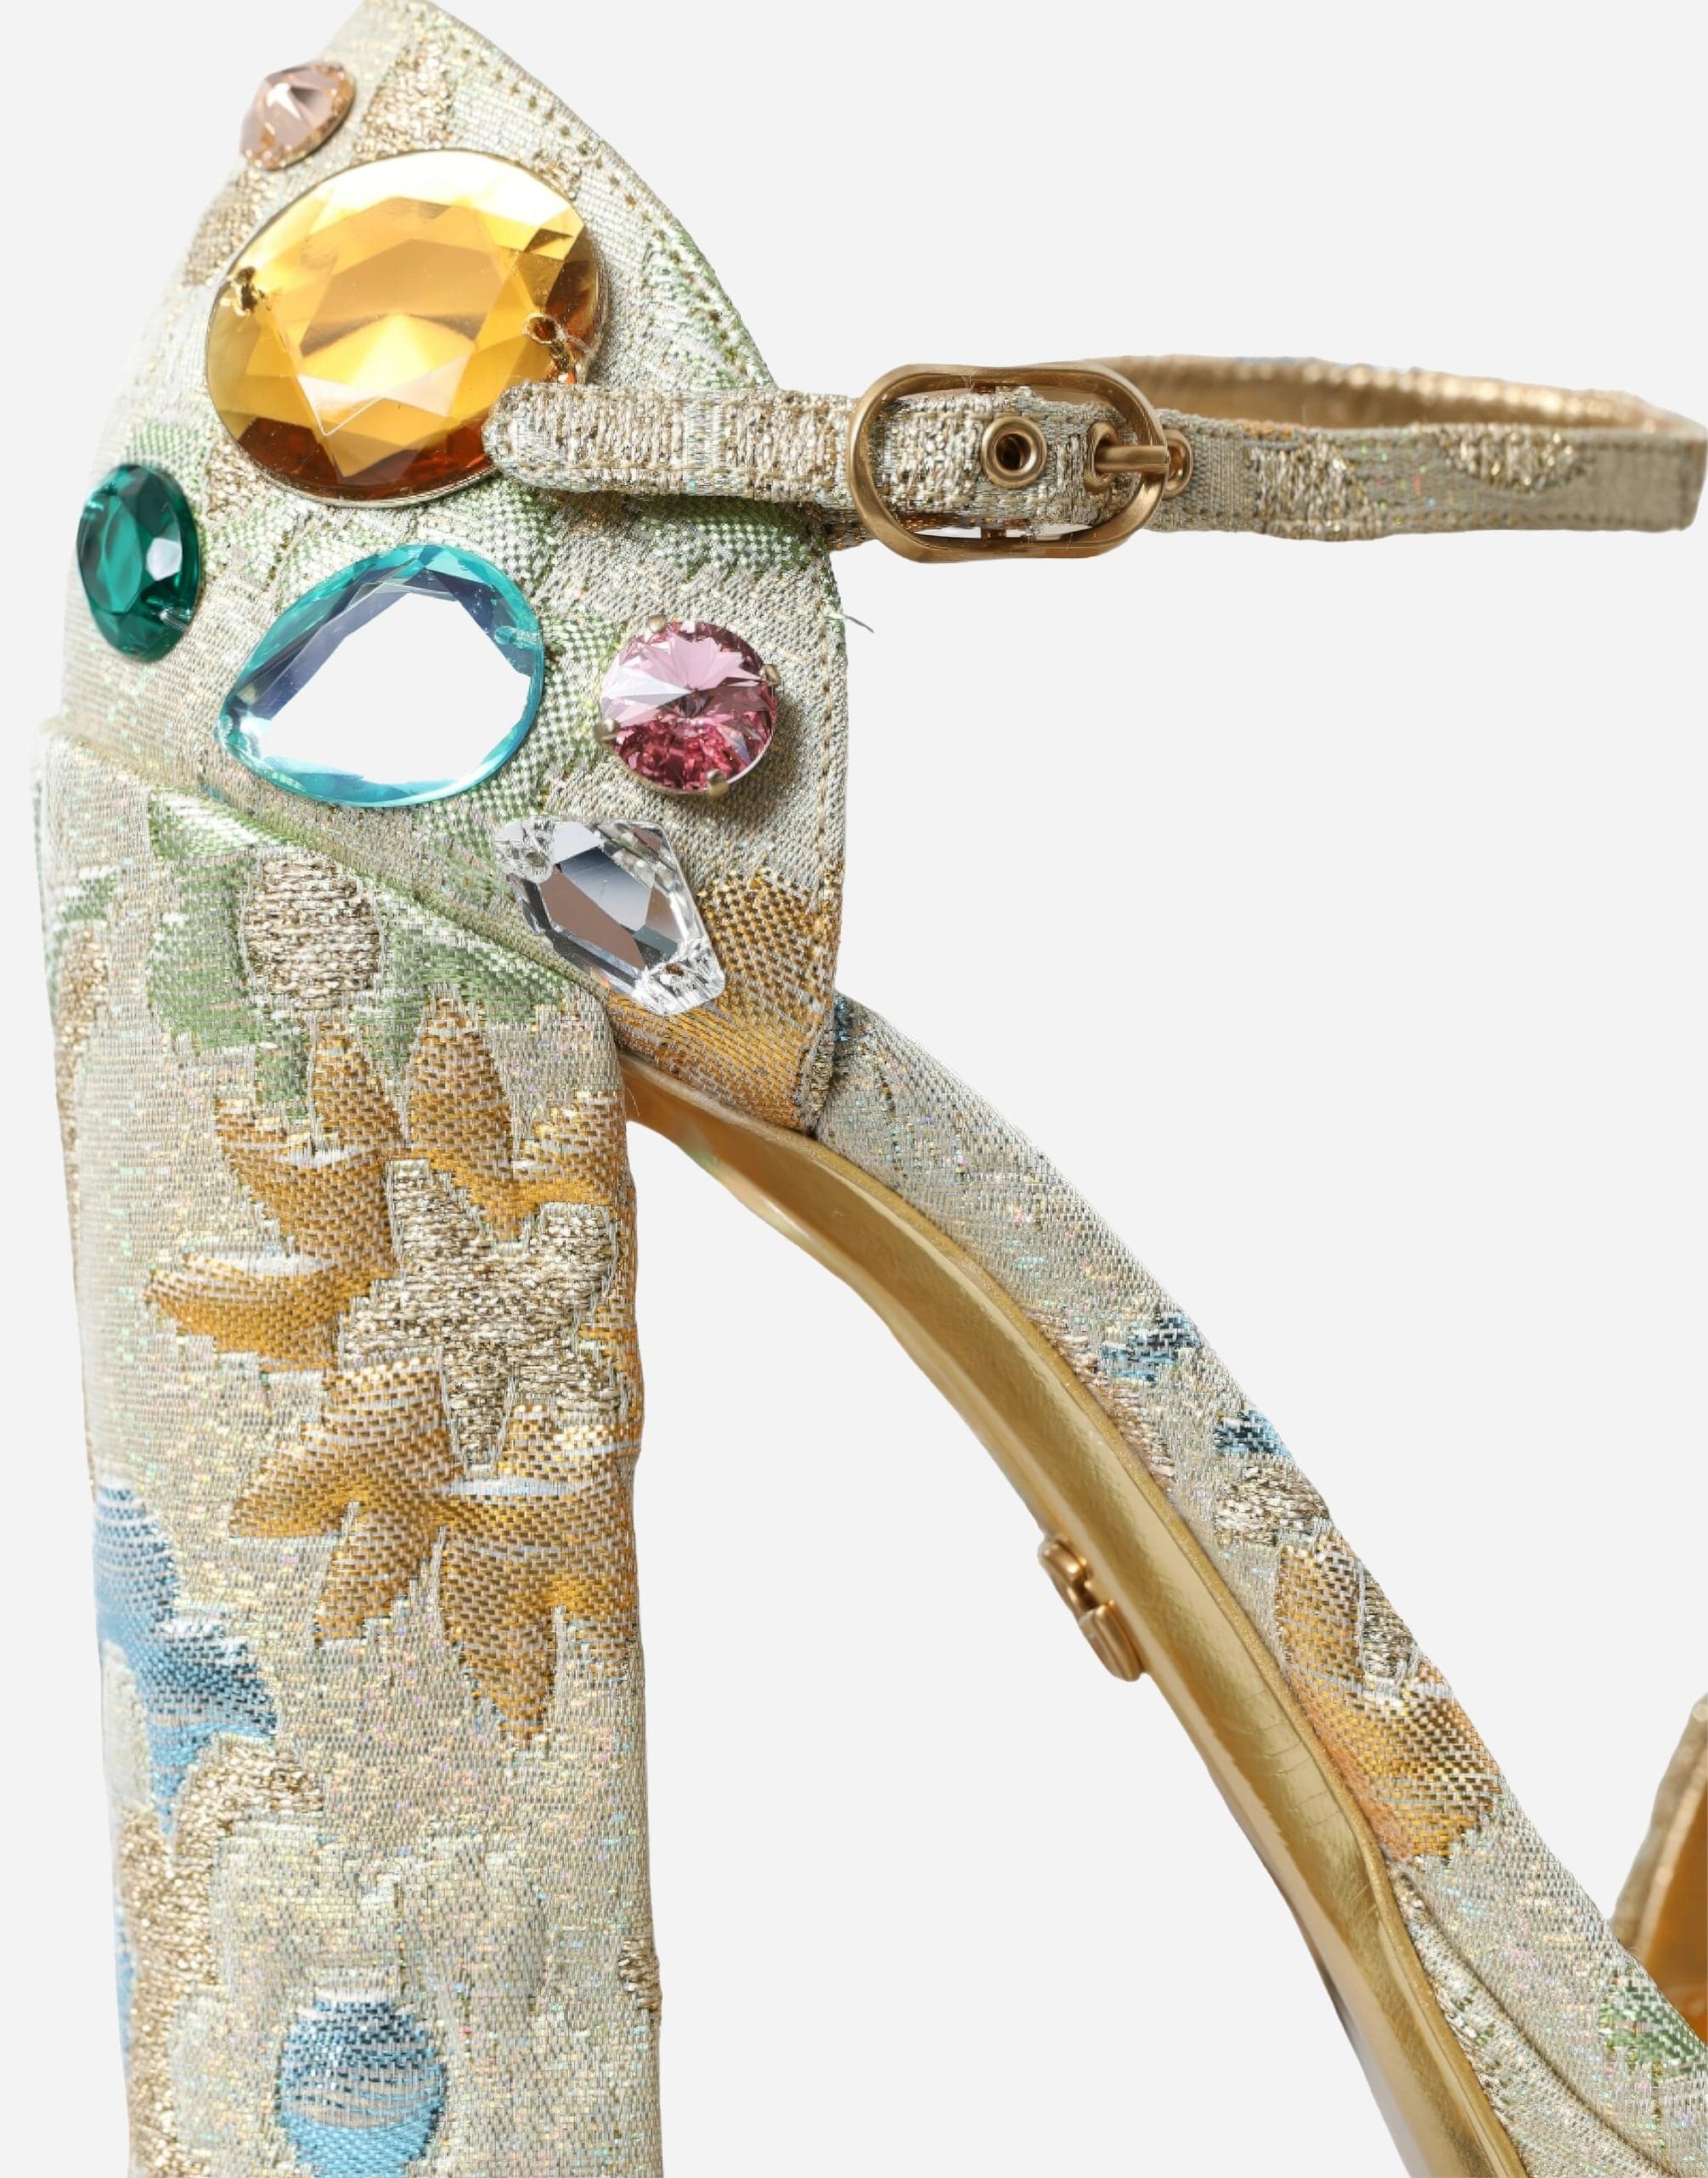 Dolce & Gabbana Jacquard Crystal-Embellished Platform Sandals